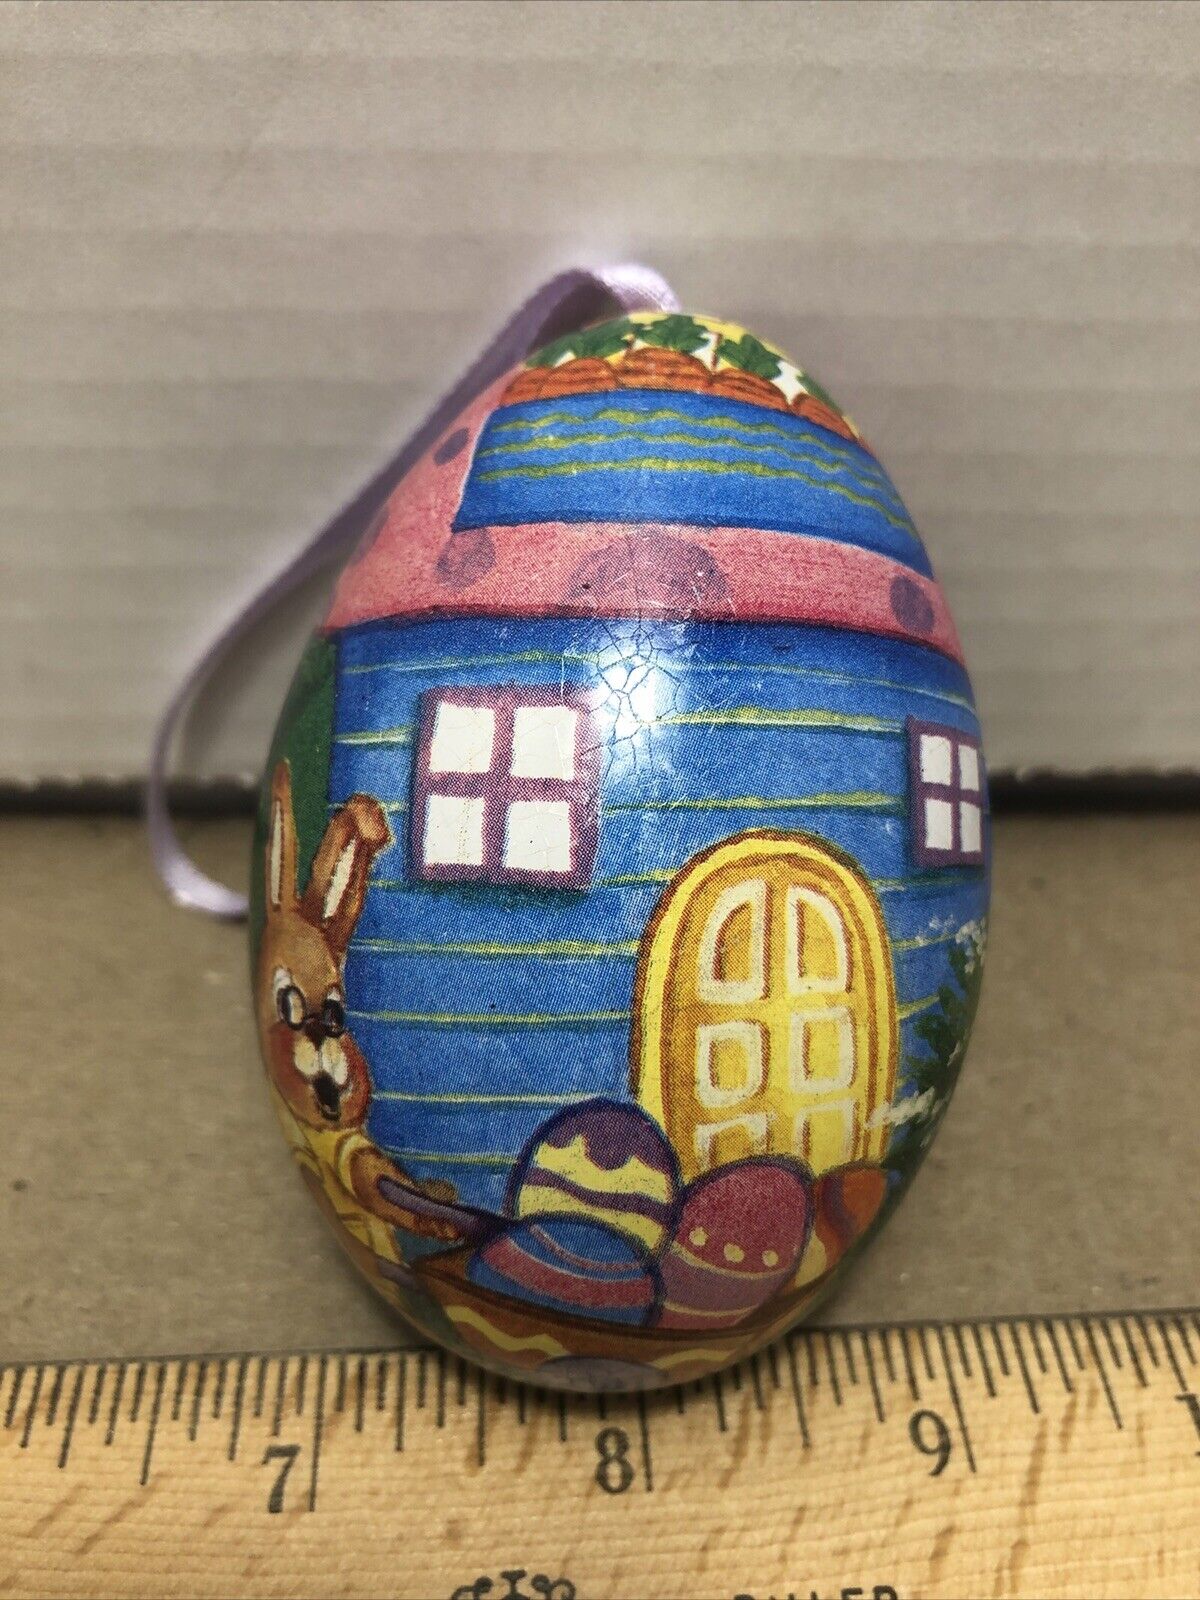 Vintage Easter Egg Ornament Candy Holder Opens Up Bright Easter Bunny Egg Design